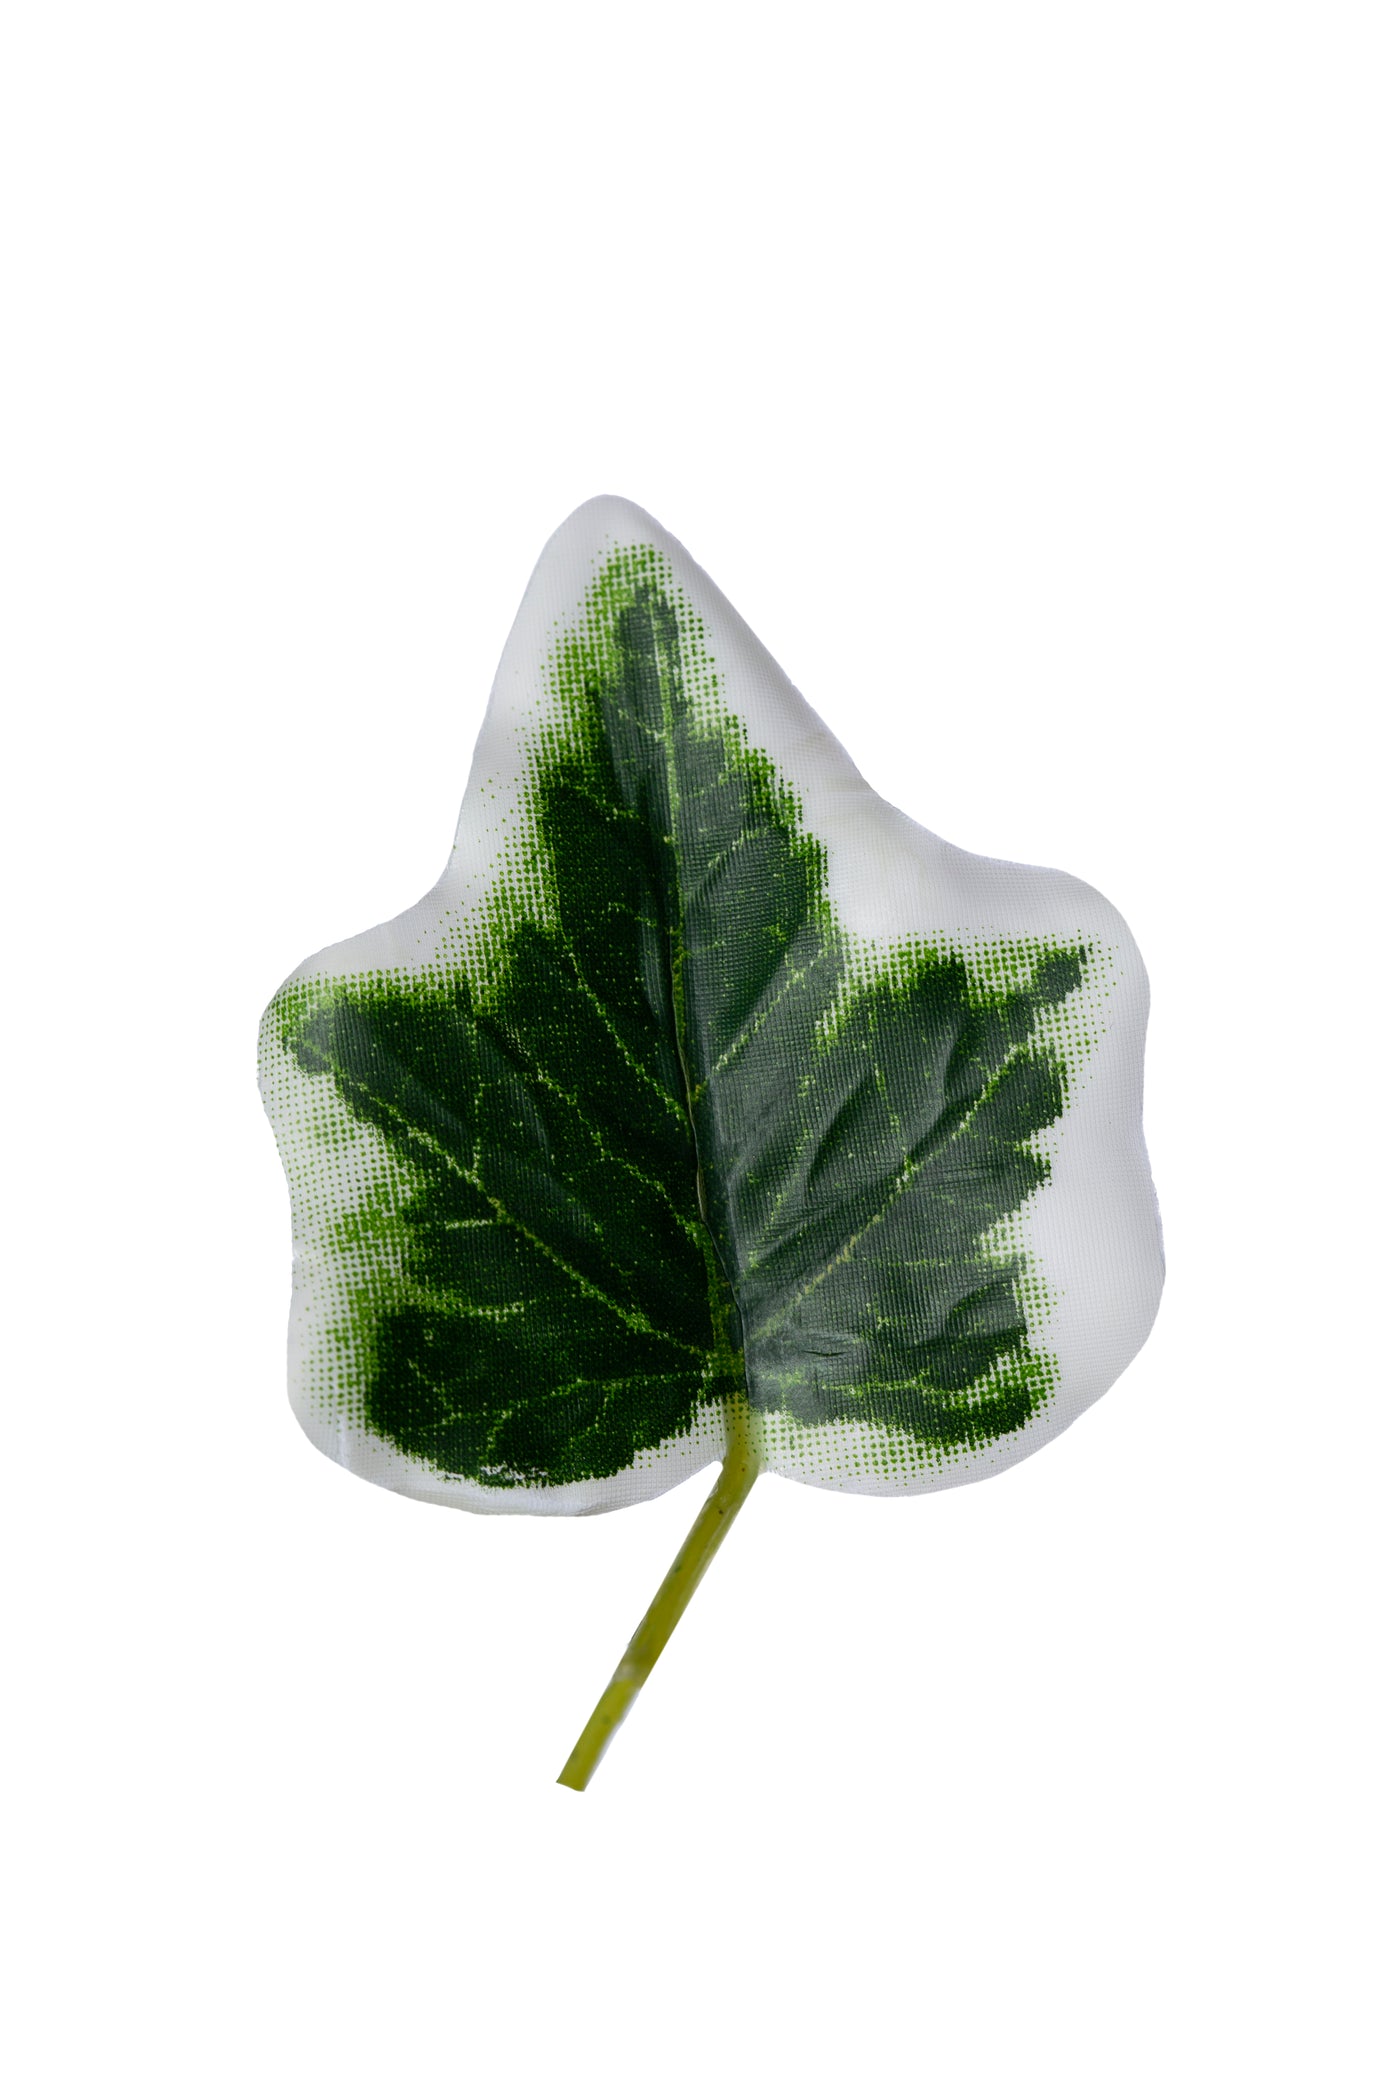 Iedera artificiala H150cm cu frunze verde cu alb pentru exterior cu protectie UV